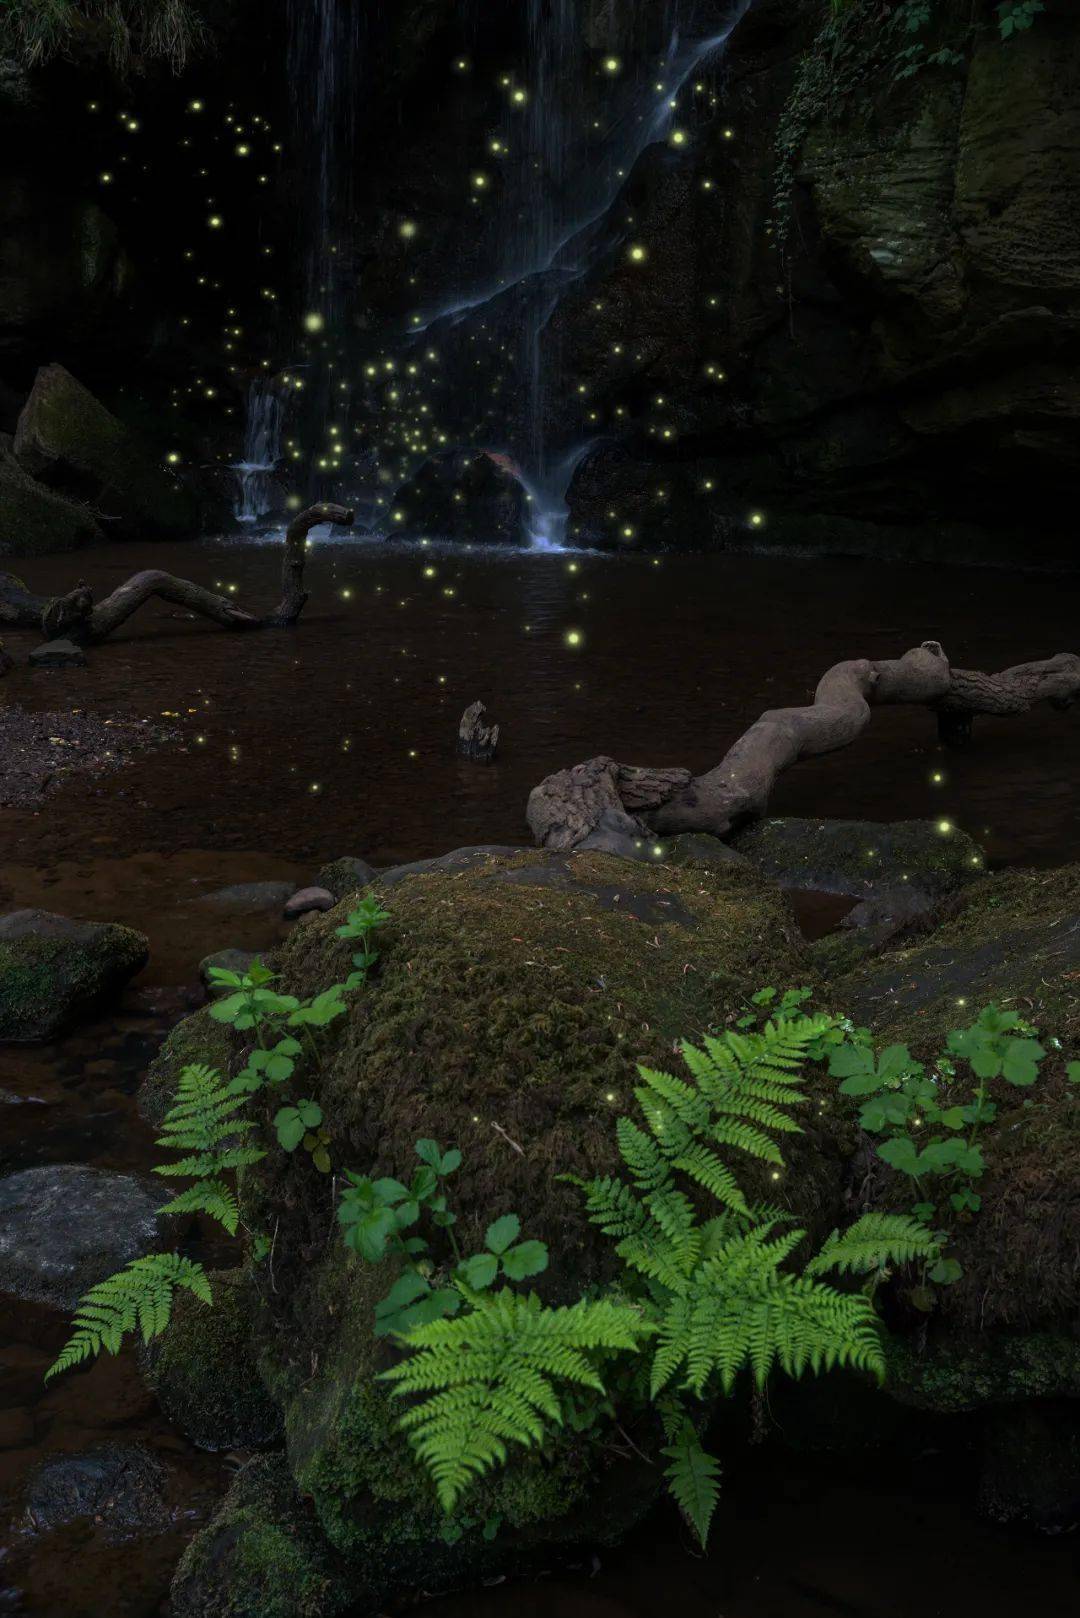 莫干山的荧光水森林 就变成了童话世界 无论晴雨,都能看到萤火虫 在